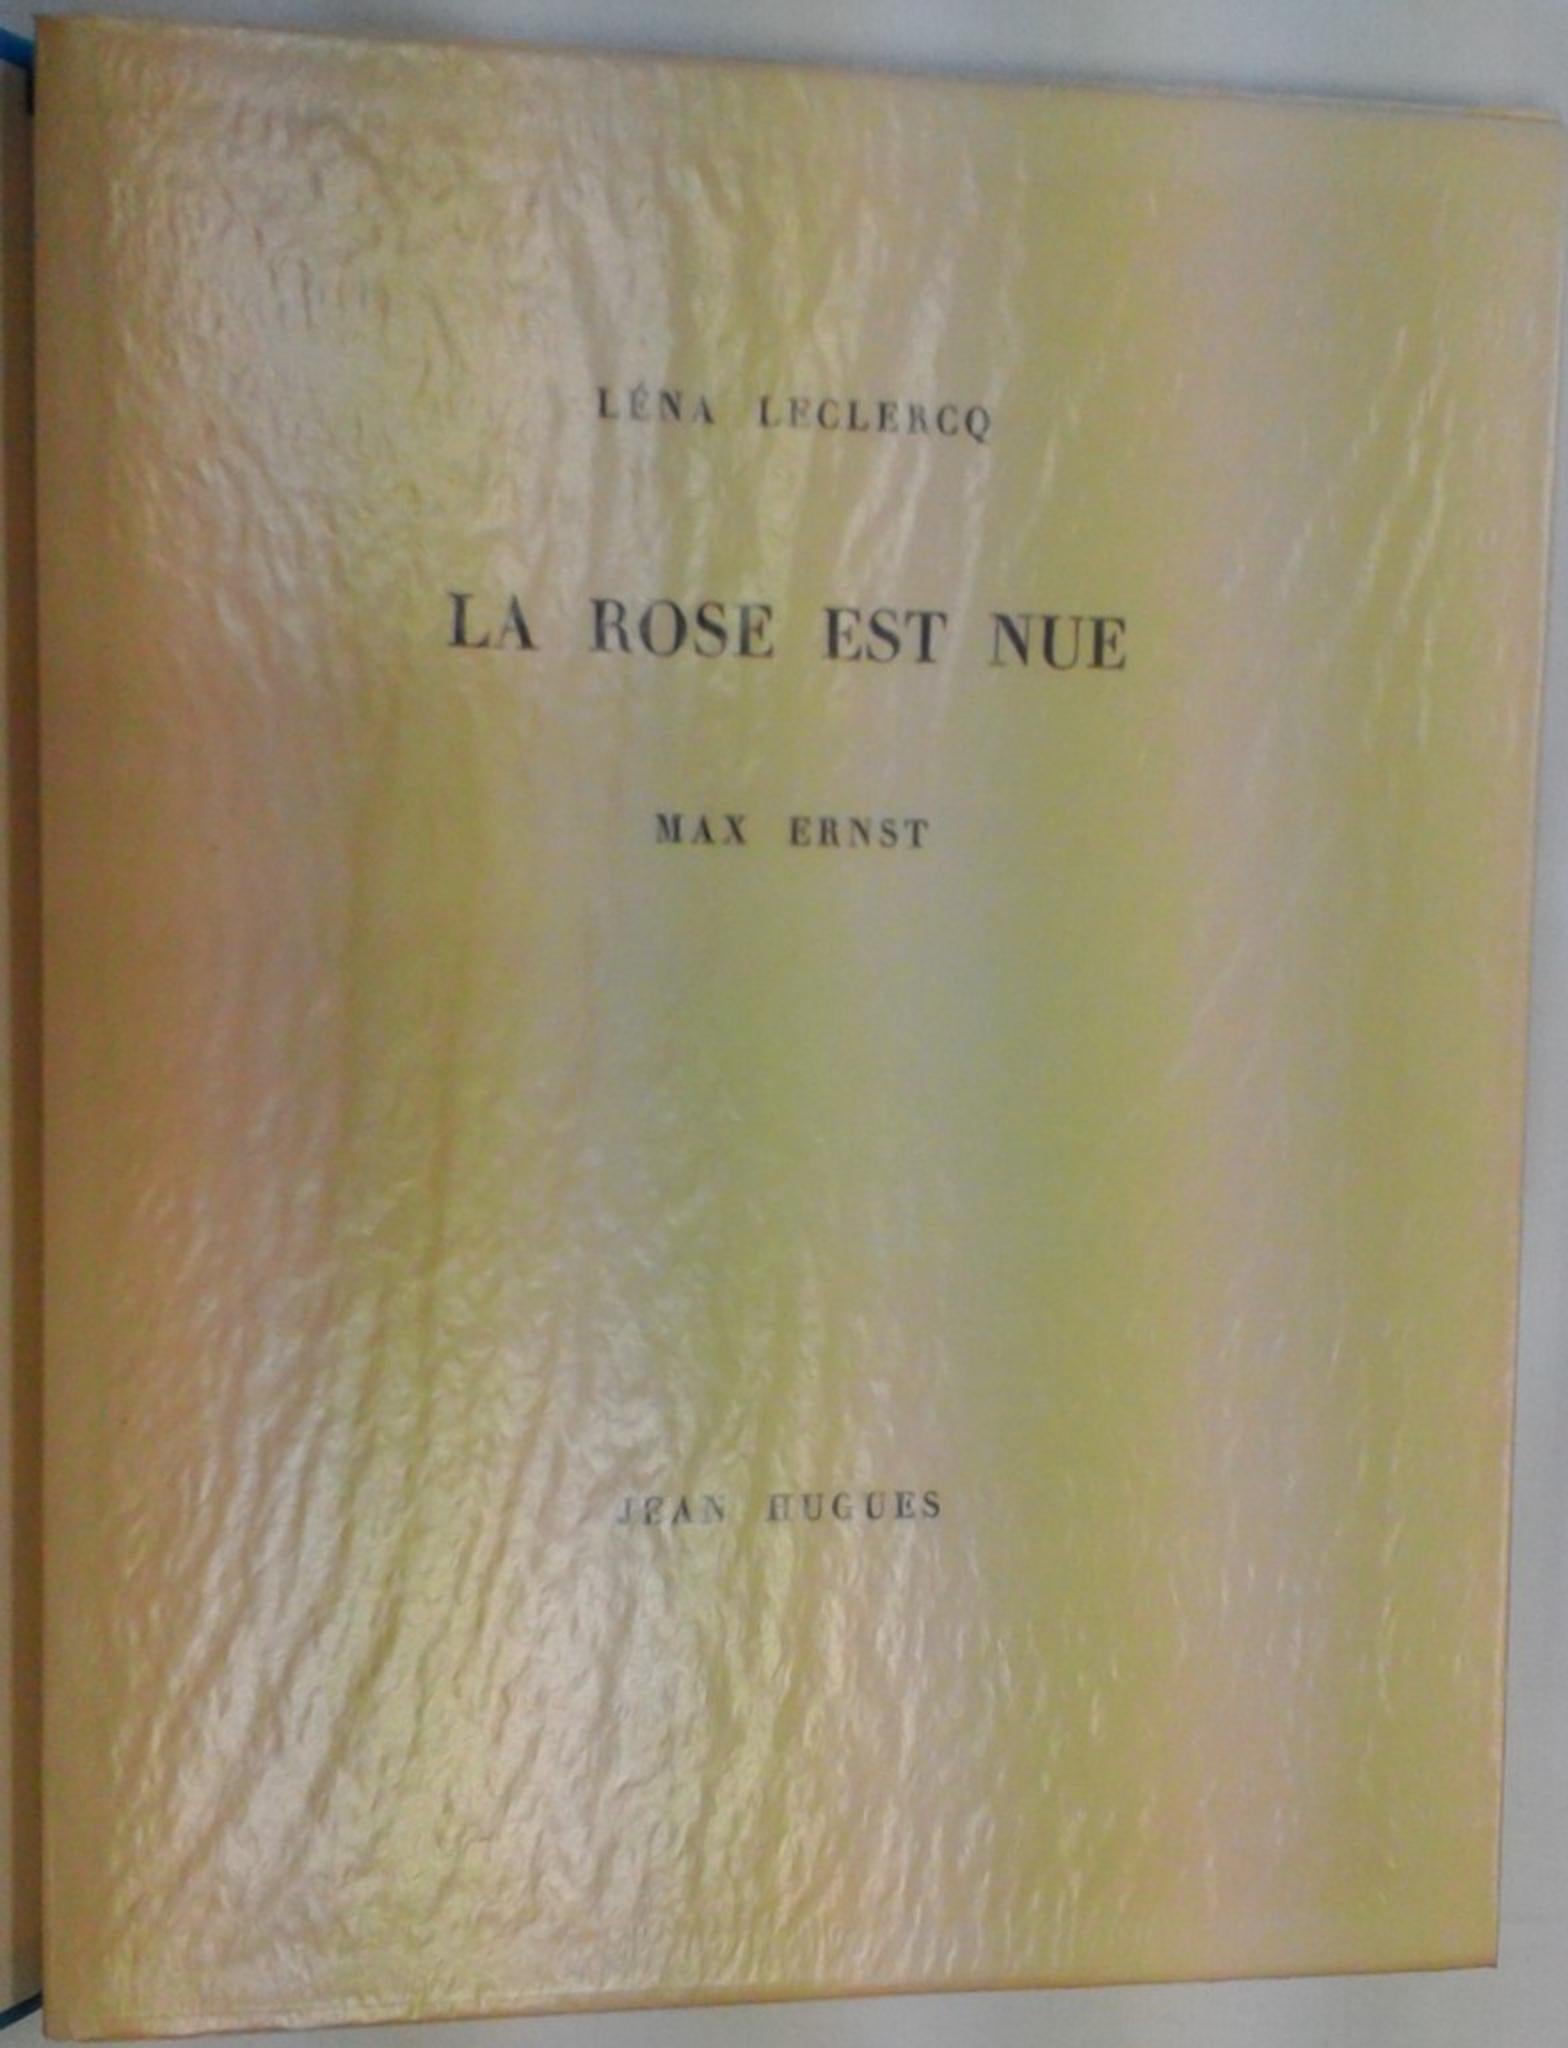 Le Rose est Nue – Seltenes Buch, illustriert von Max Ernst  - 1960 (Surrealismus), Art, von Max Ernst, Lena Leclercq, Jean Hugues